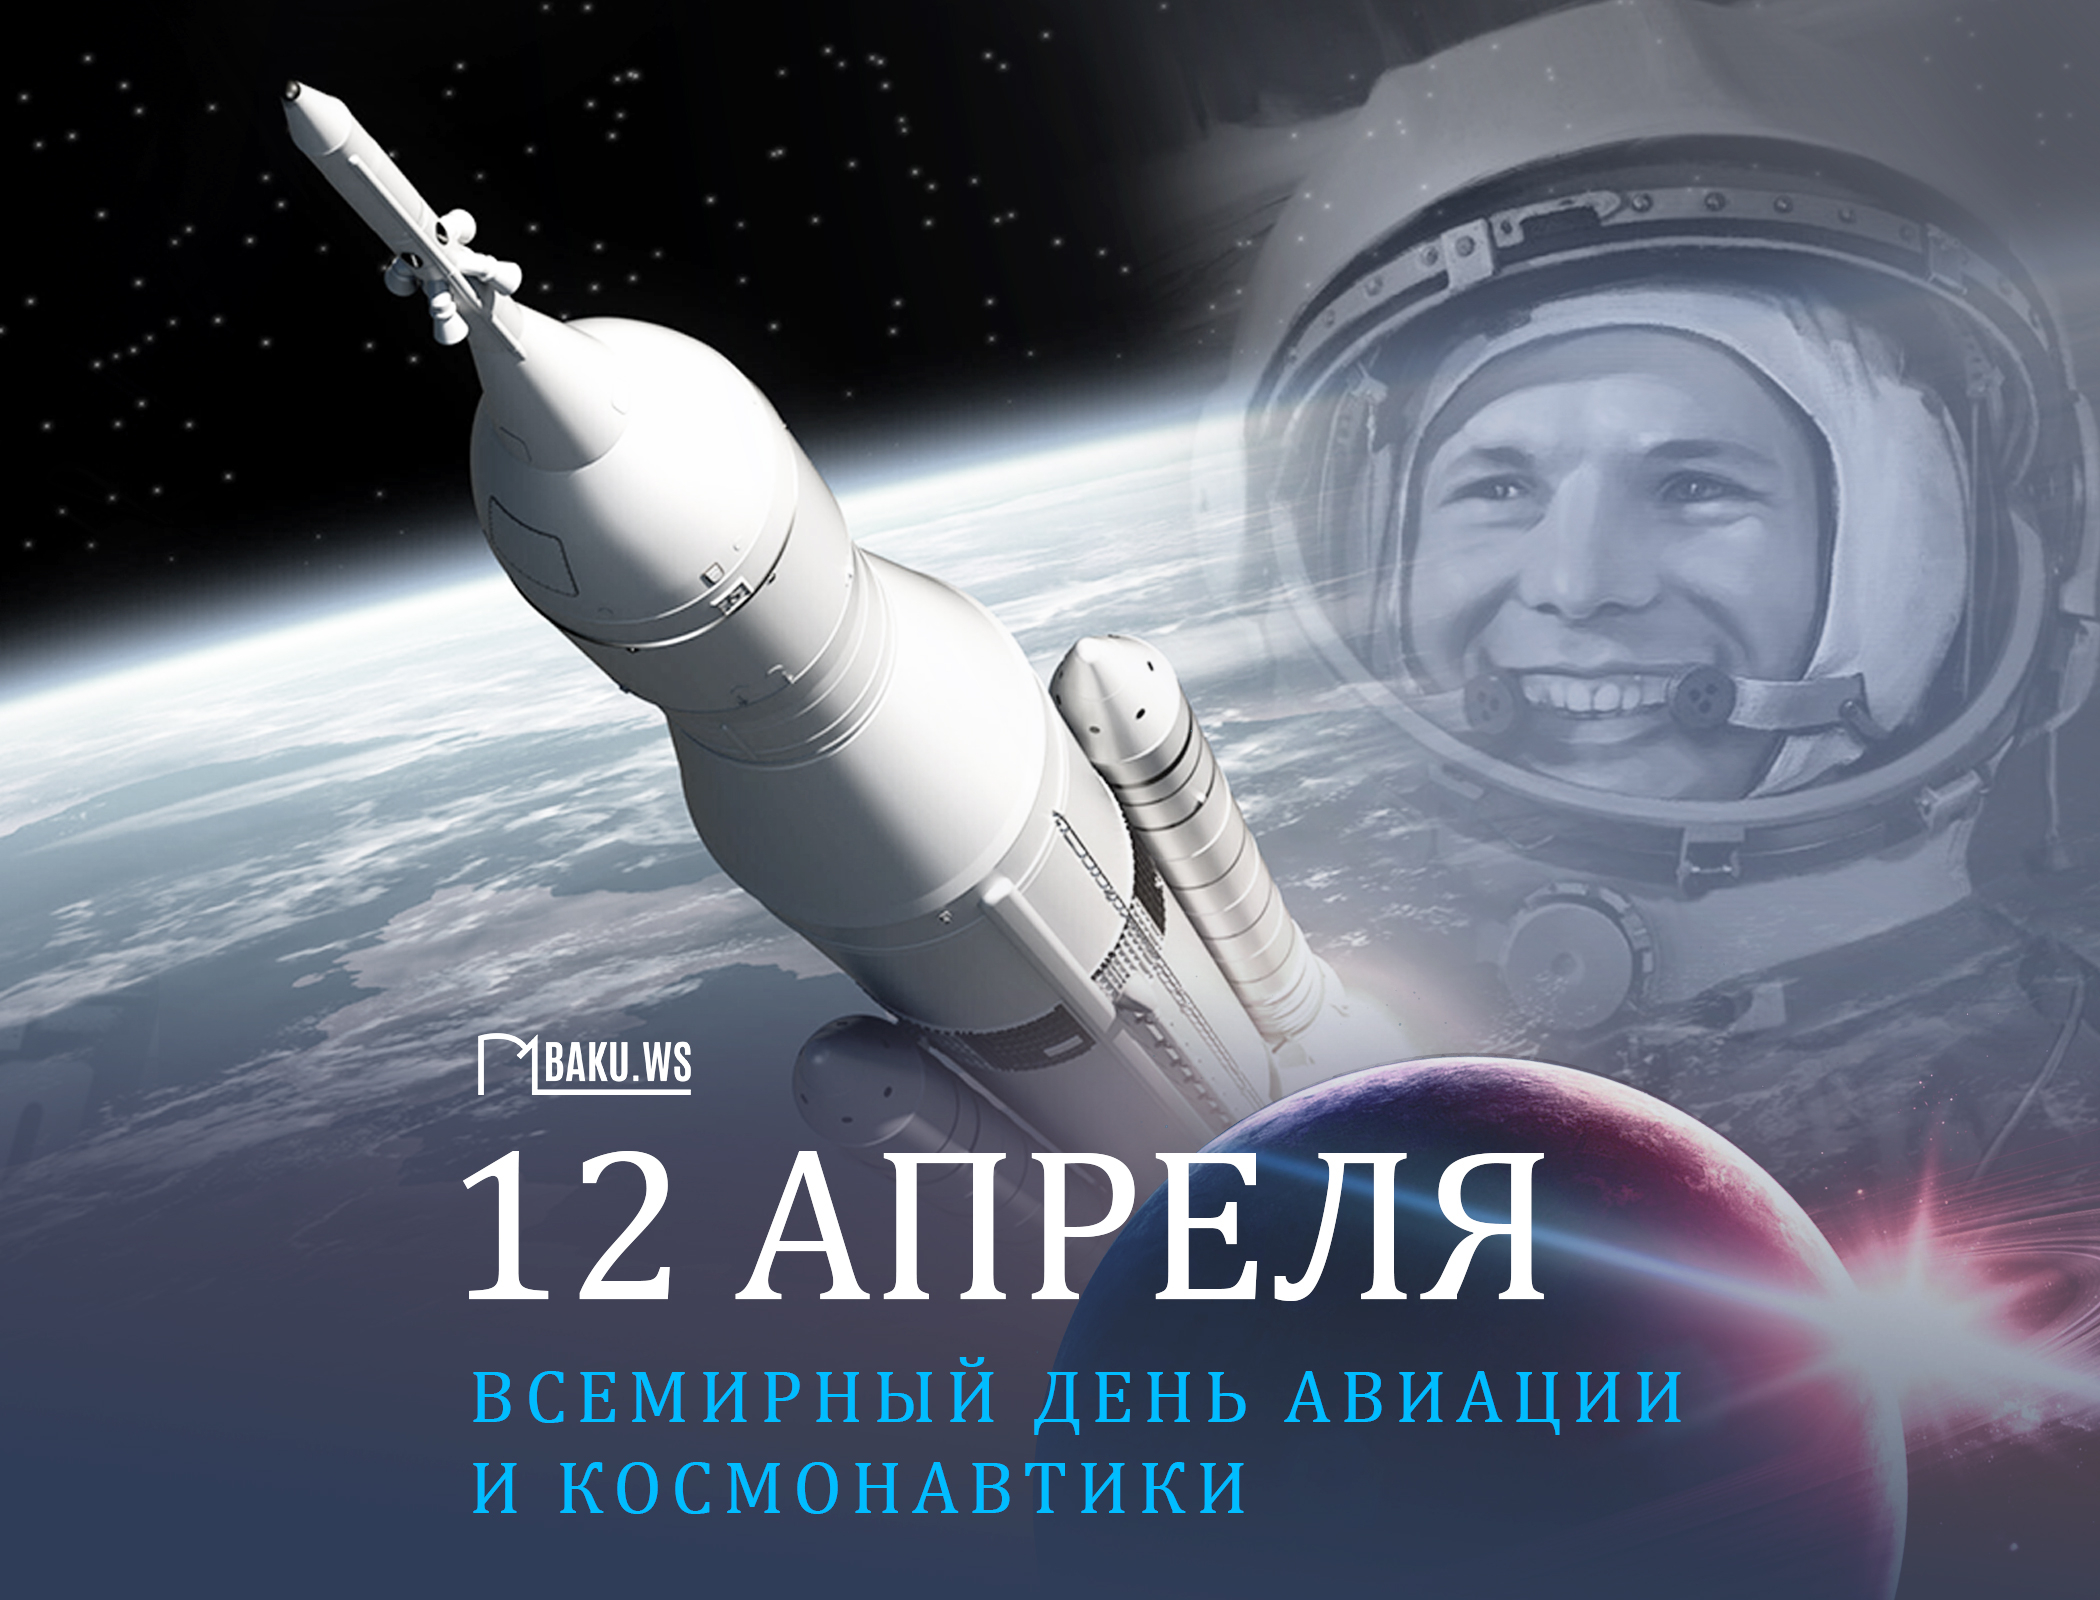 Сегодня отмечается Всемирный день авиации и космонавтики